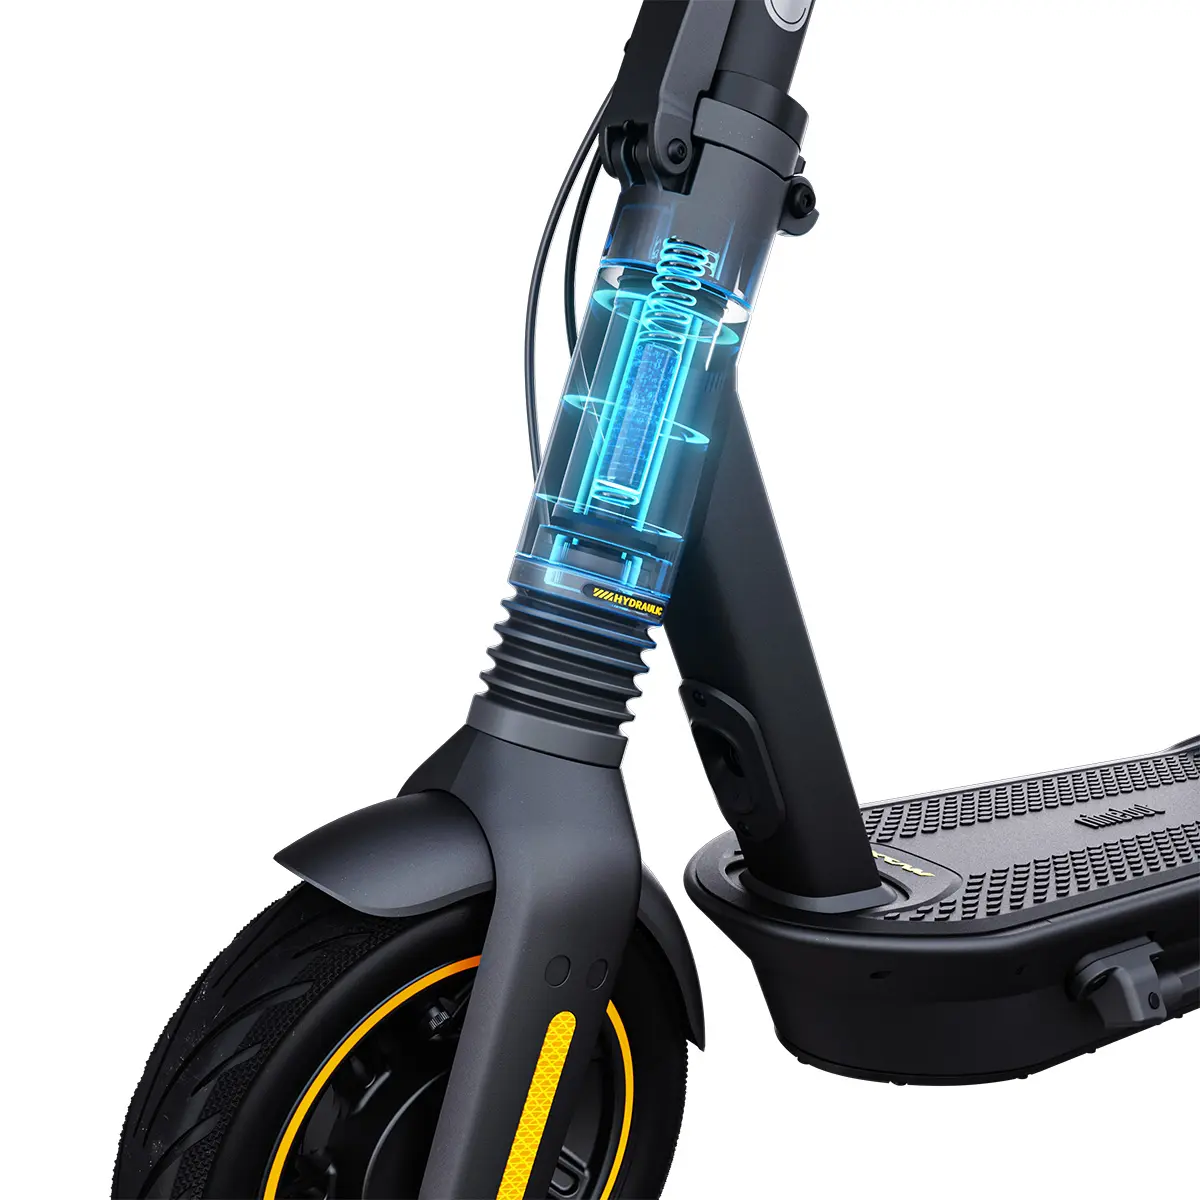 Reseña del Segway Ninebot KickScooter Max G2 E-Scooter: Gran  maniobrabilidad gracias a la suspensión hidráulica total -   Analisis